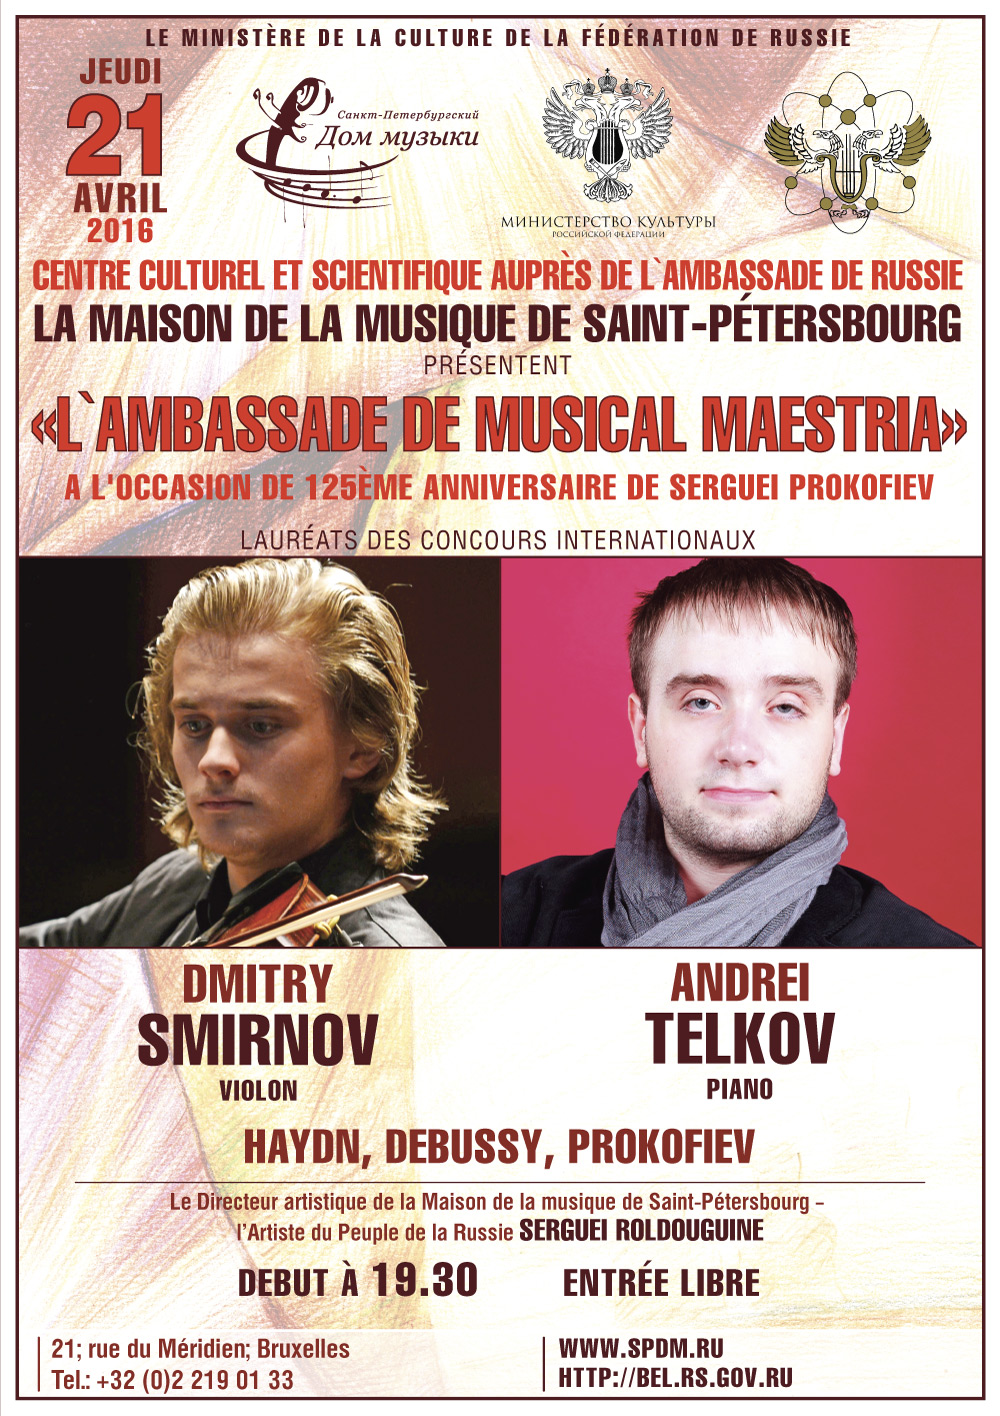 Affiche. CCSRB. Ambassade de musical maestria. Dmitry Smirnov (violon) et Andrei Telkov (piano). FR. 2016-04-21